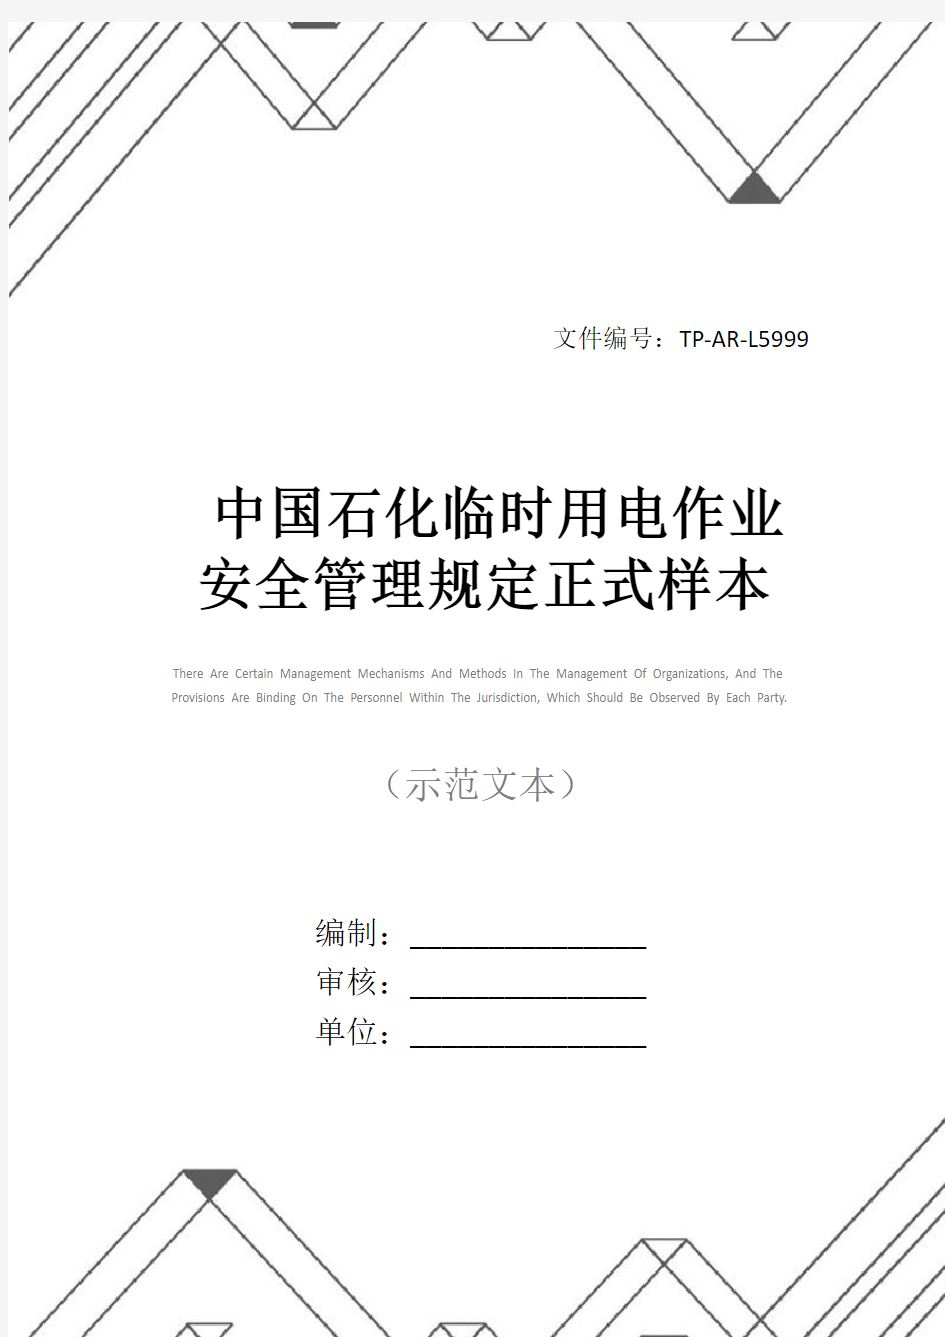 中国石化临时用电作业安全管理规定正式样本